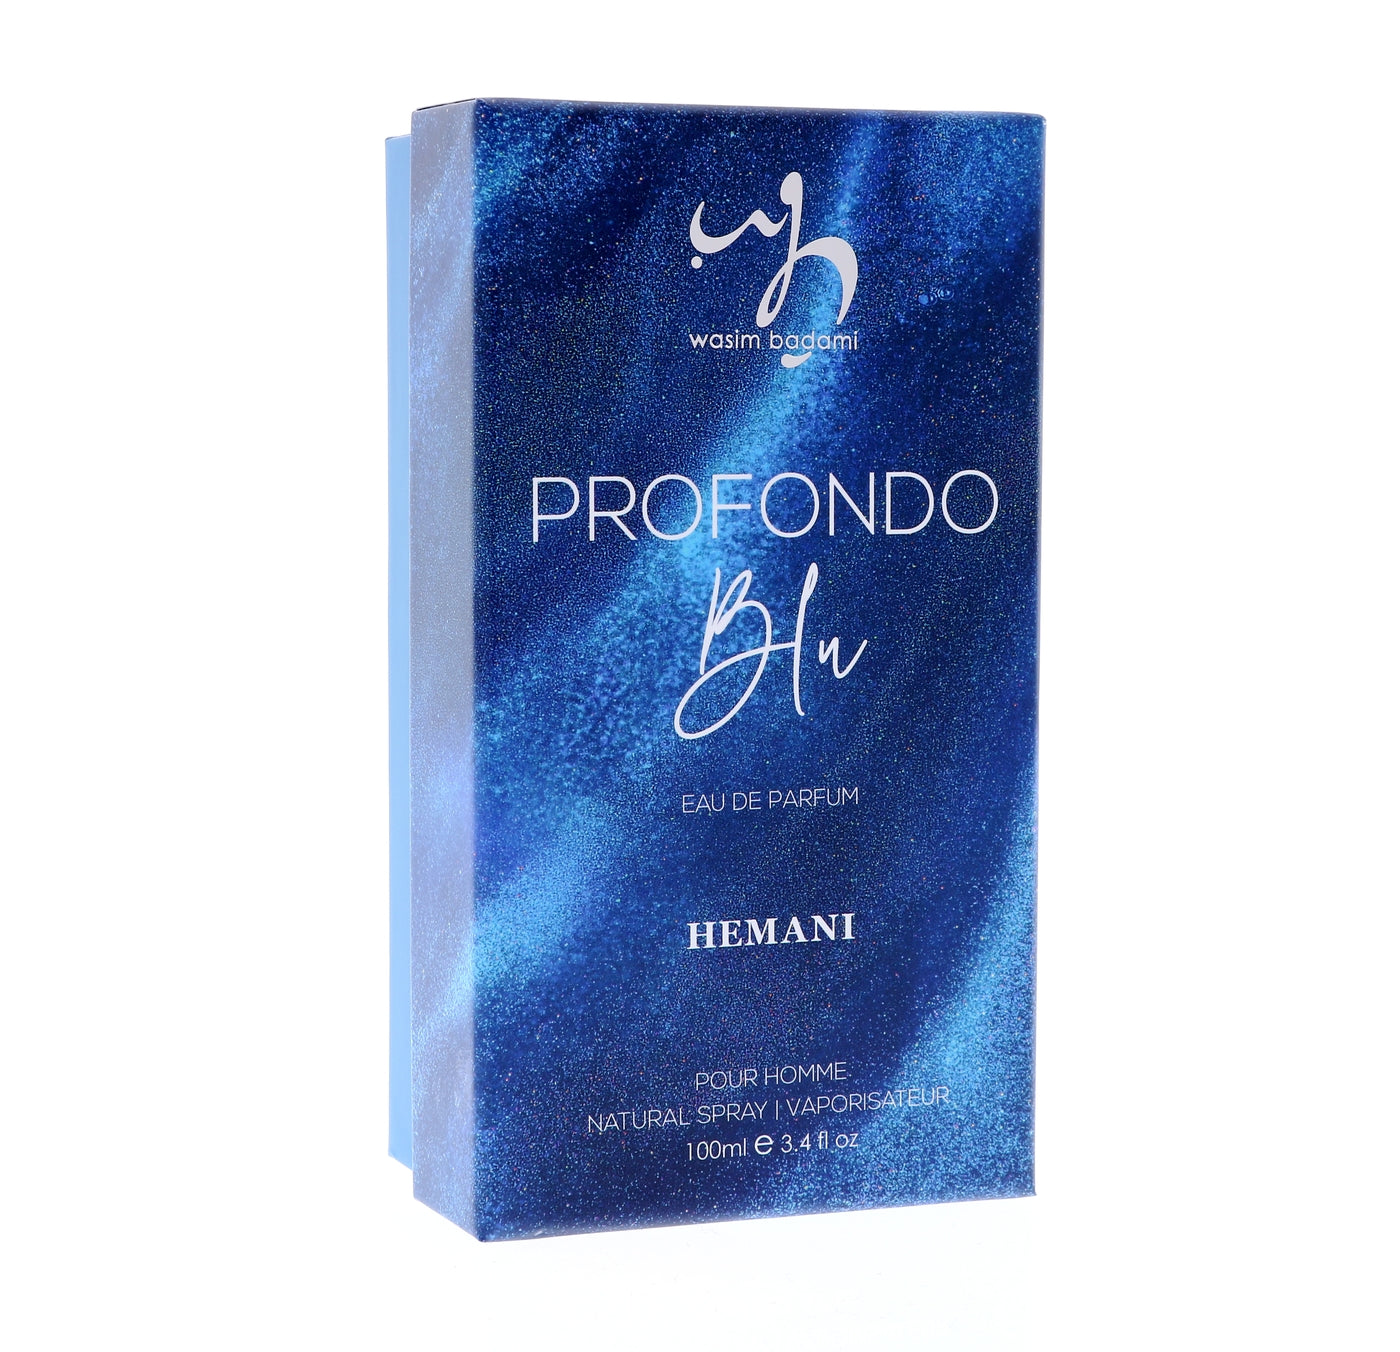 wb-perfume-profondo-blu-100ml-m-3